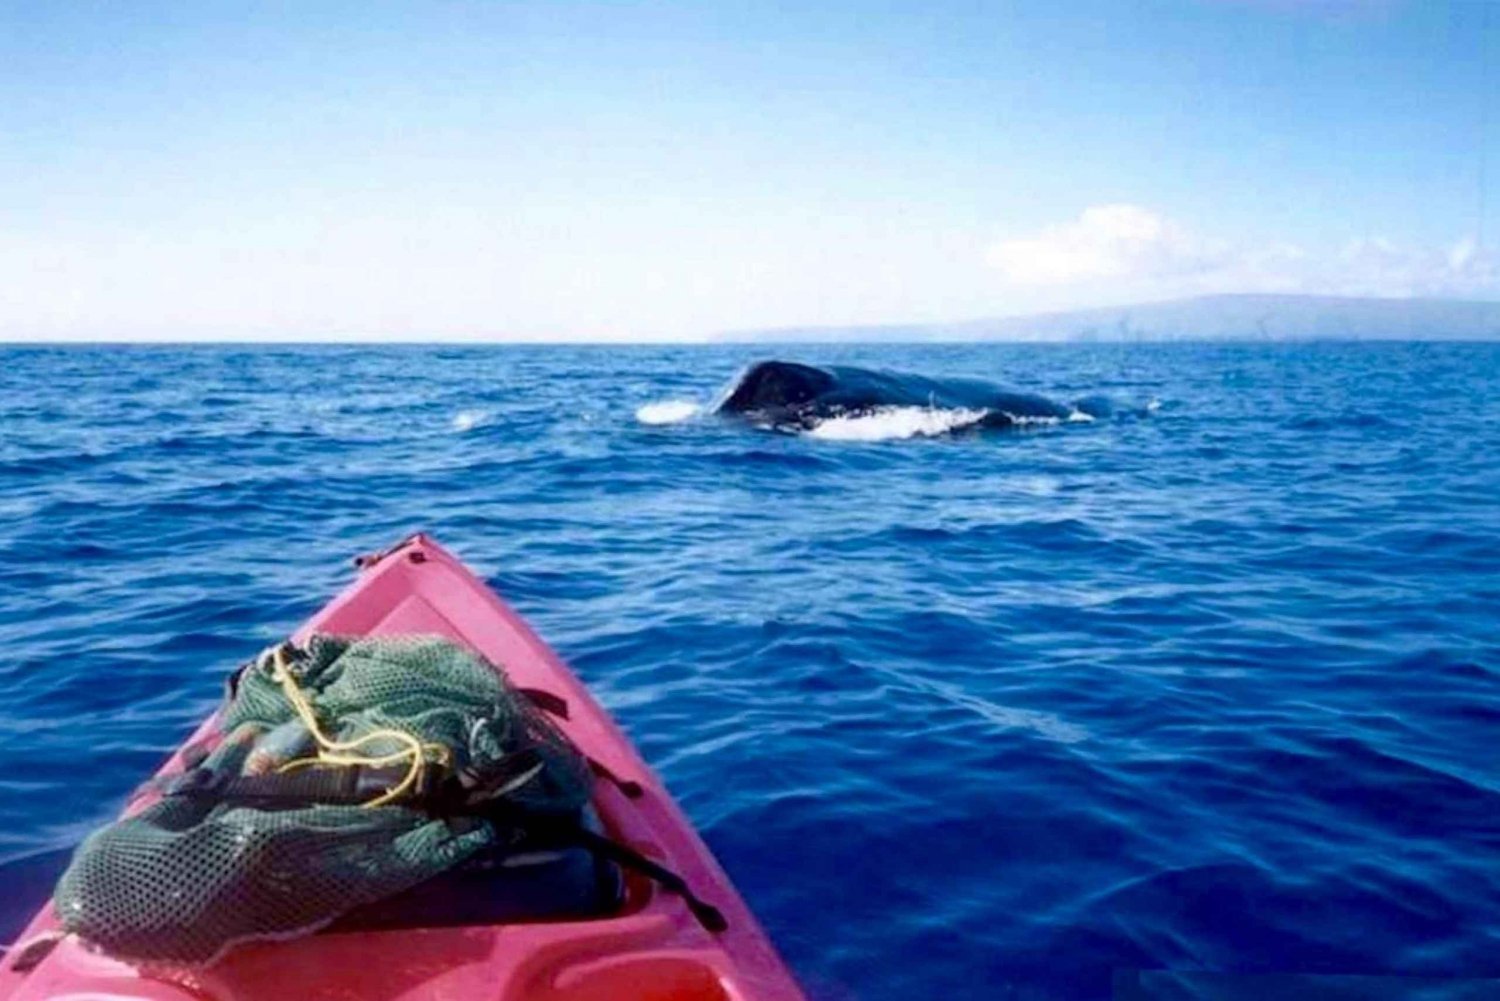 Zuid-Maui: walvissen spotten en snorkelen in Kihei